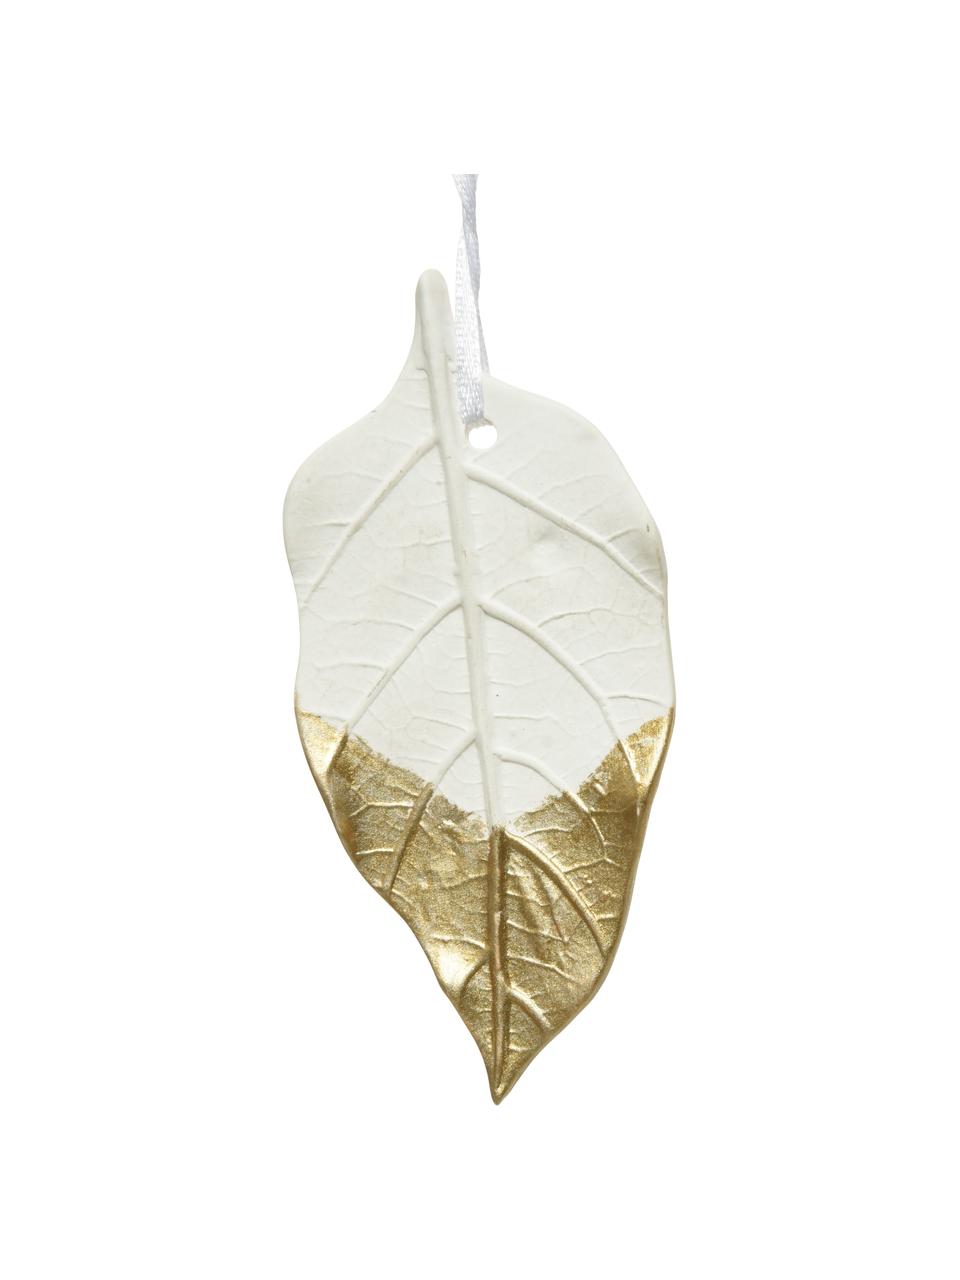 Sada ozdob na stromeček Leaves, 3 díly, Porcelán, Bílá, zlatá, Š 4 cm, V 13 cm